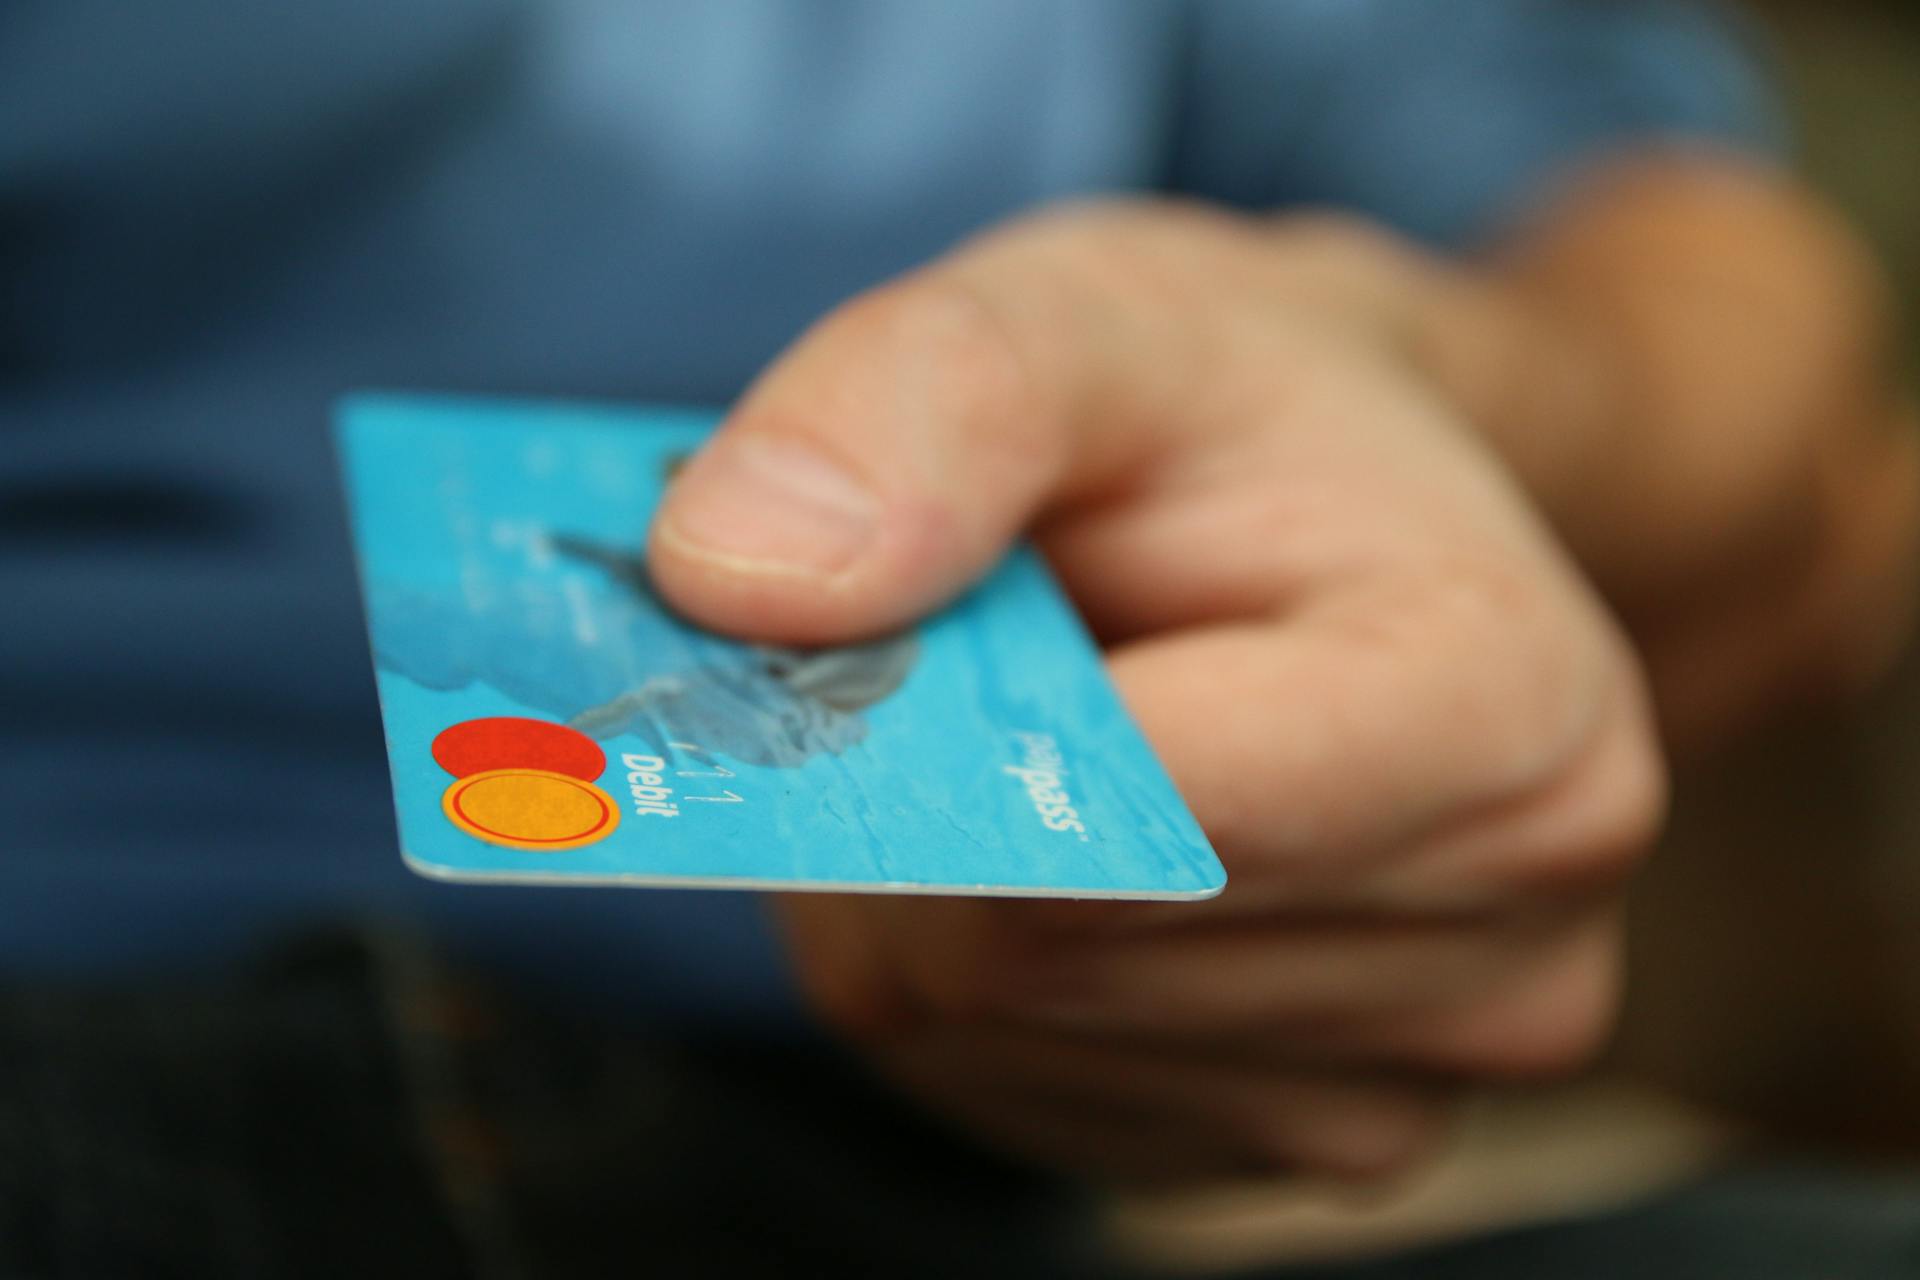 Una persona con una tarjeta de débito | Fuente: Pexels